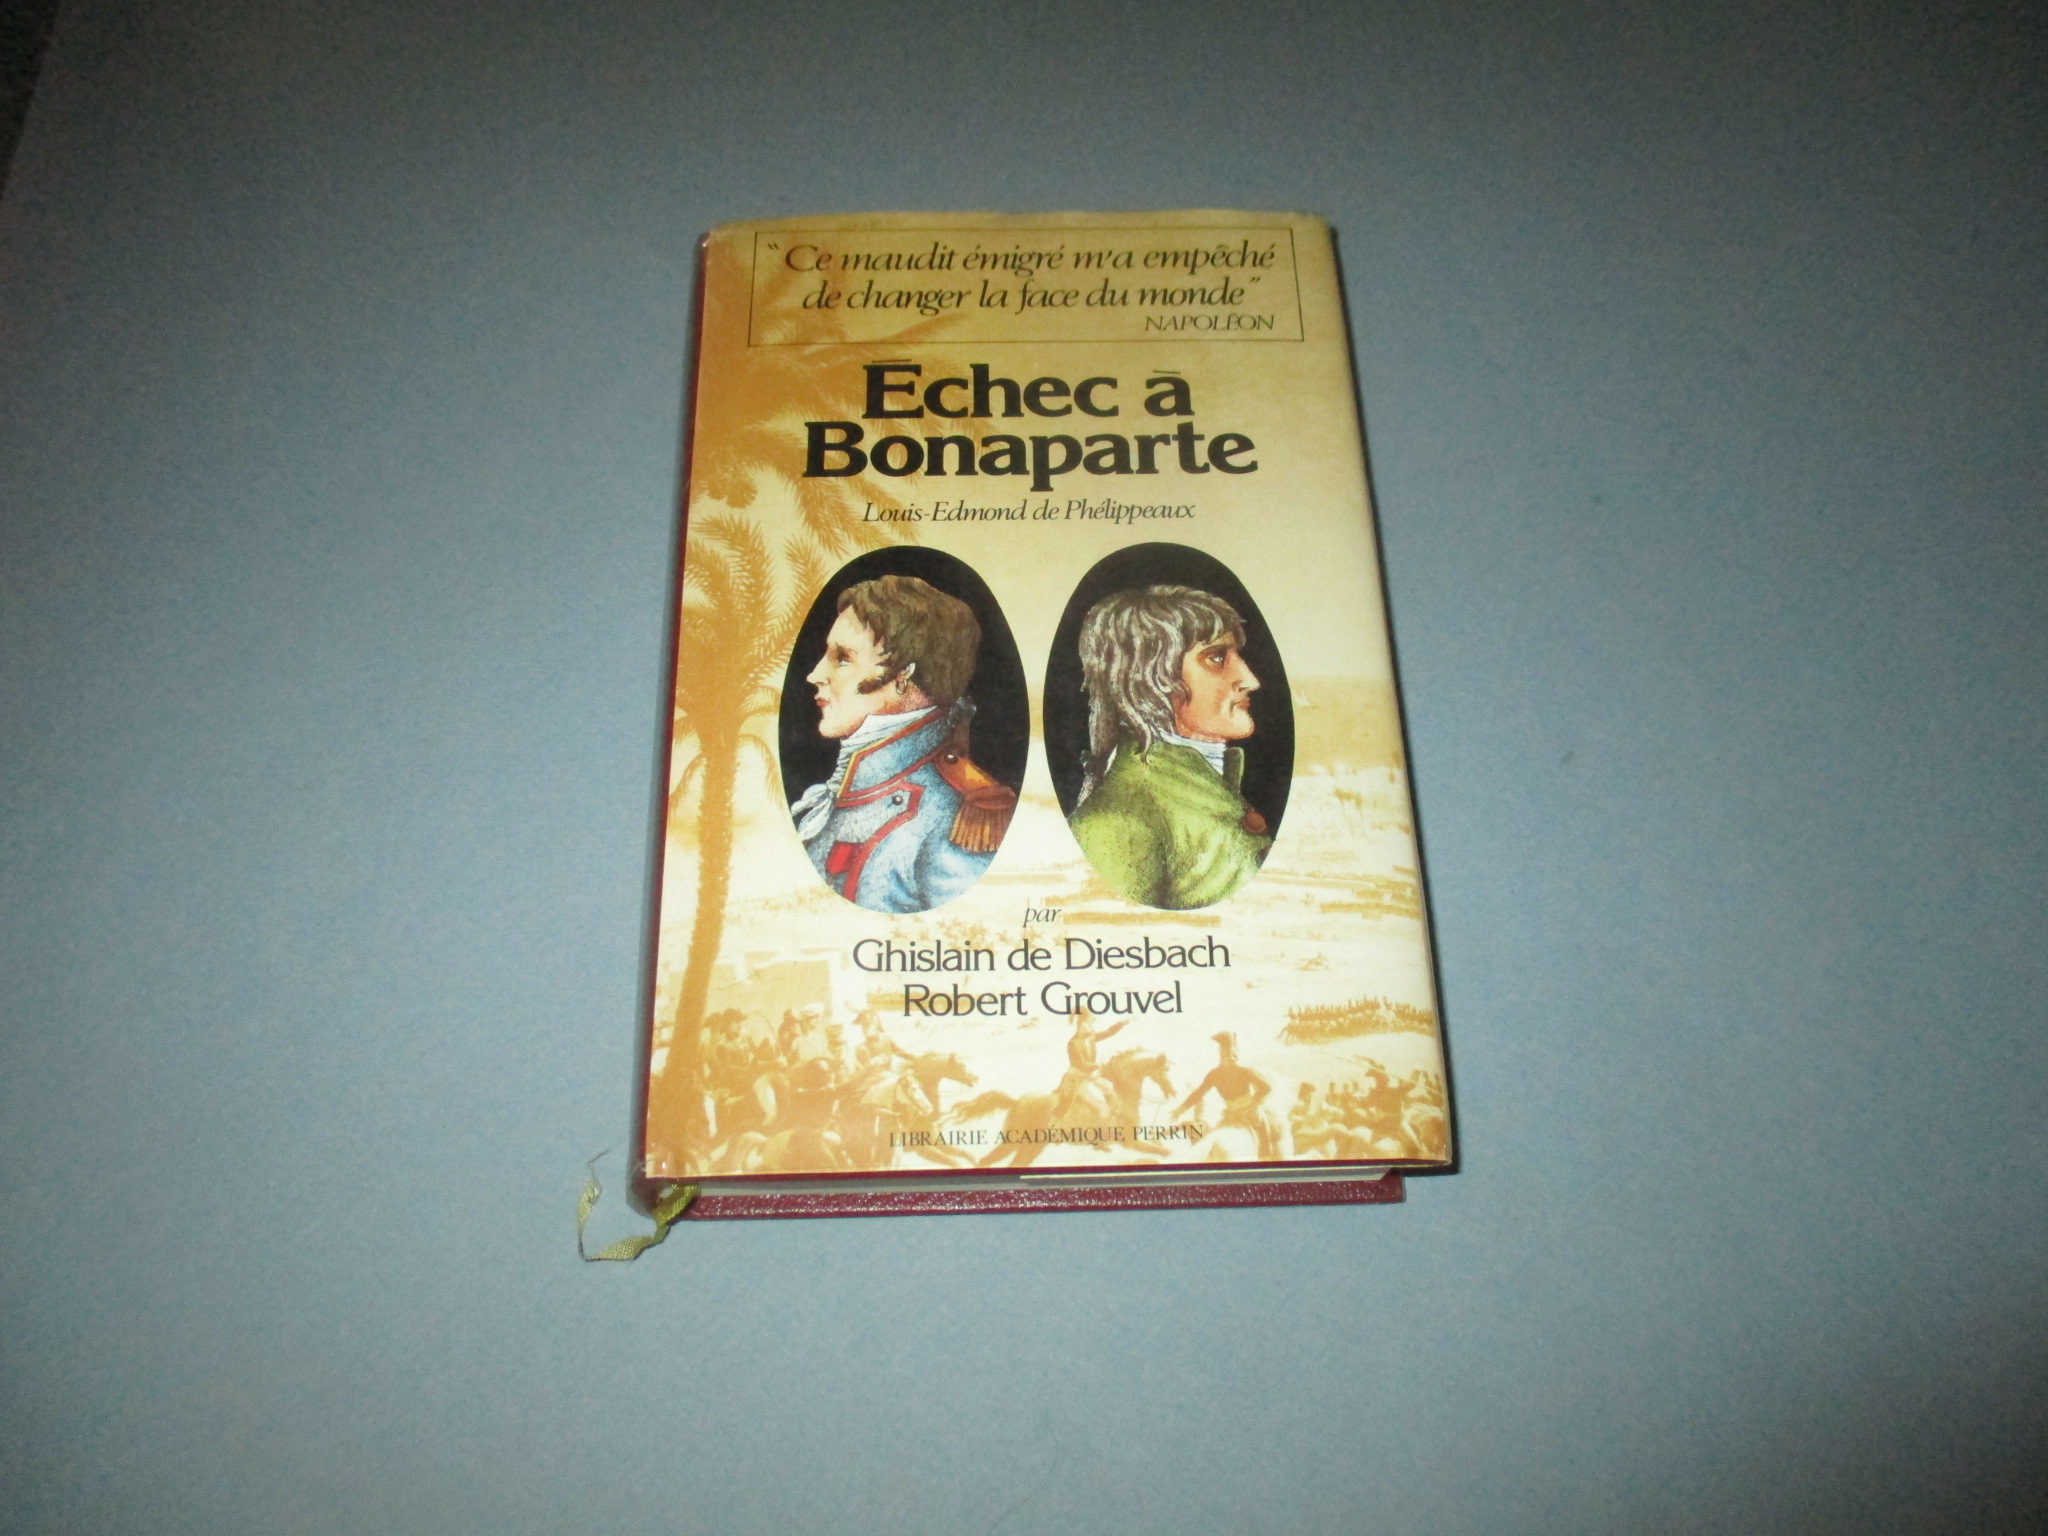 Echec à Bonaparte, Louis-Edmond de Phélippeaux, Ghislain de Diesbach & Robert Grouvel, Librairie Académique Perrin